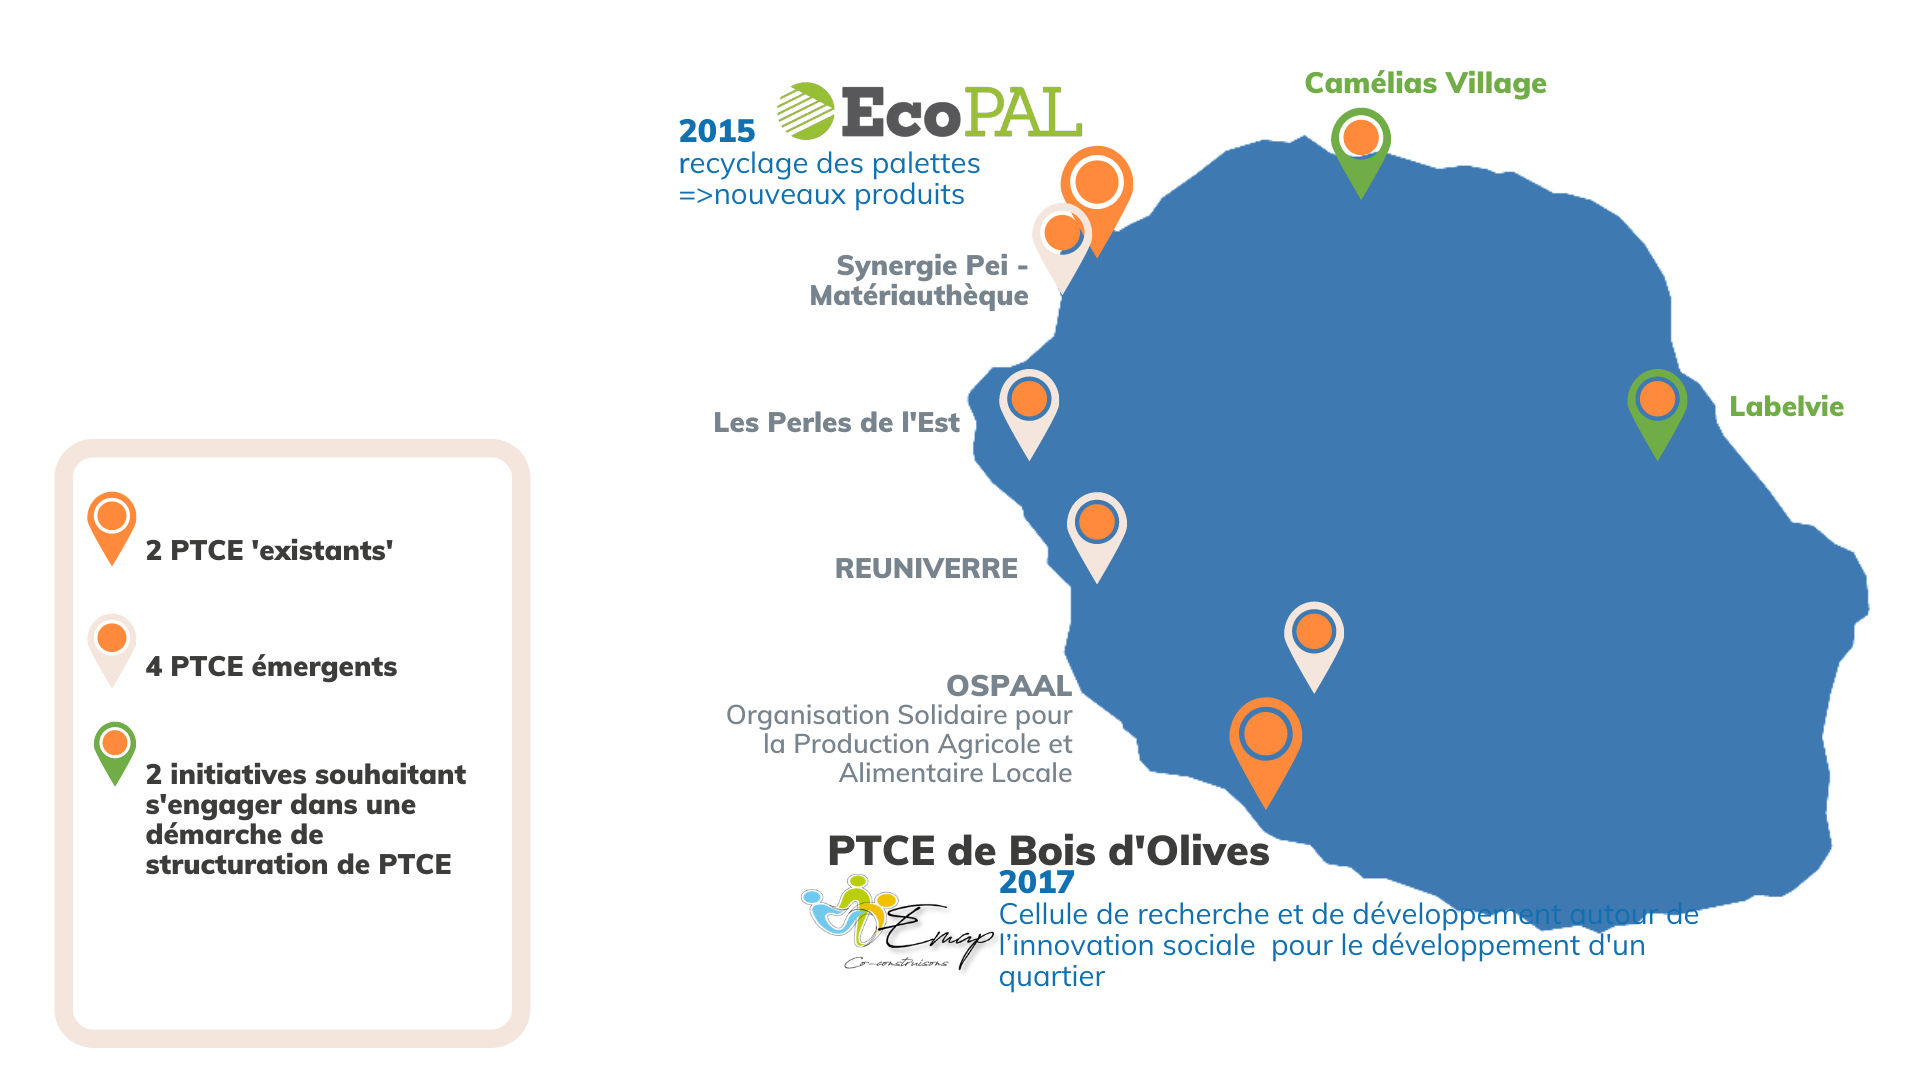 Au total à La Réunion, 6 PTCE existant et émergents sont comptabilisés